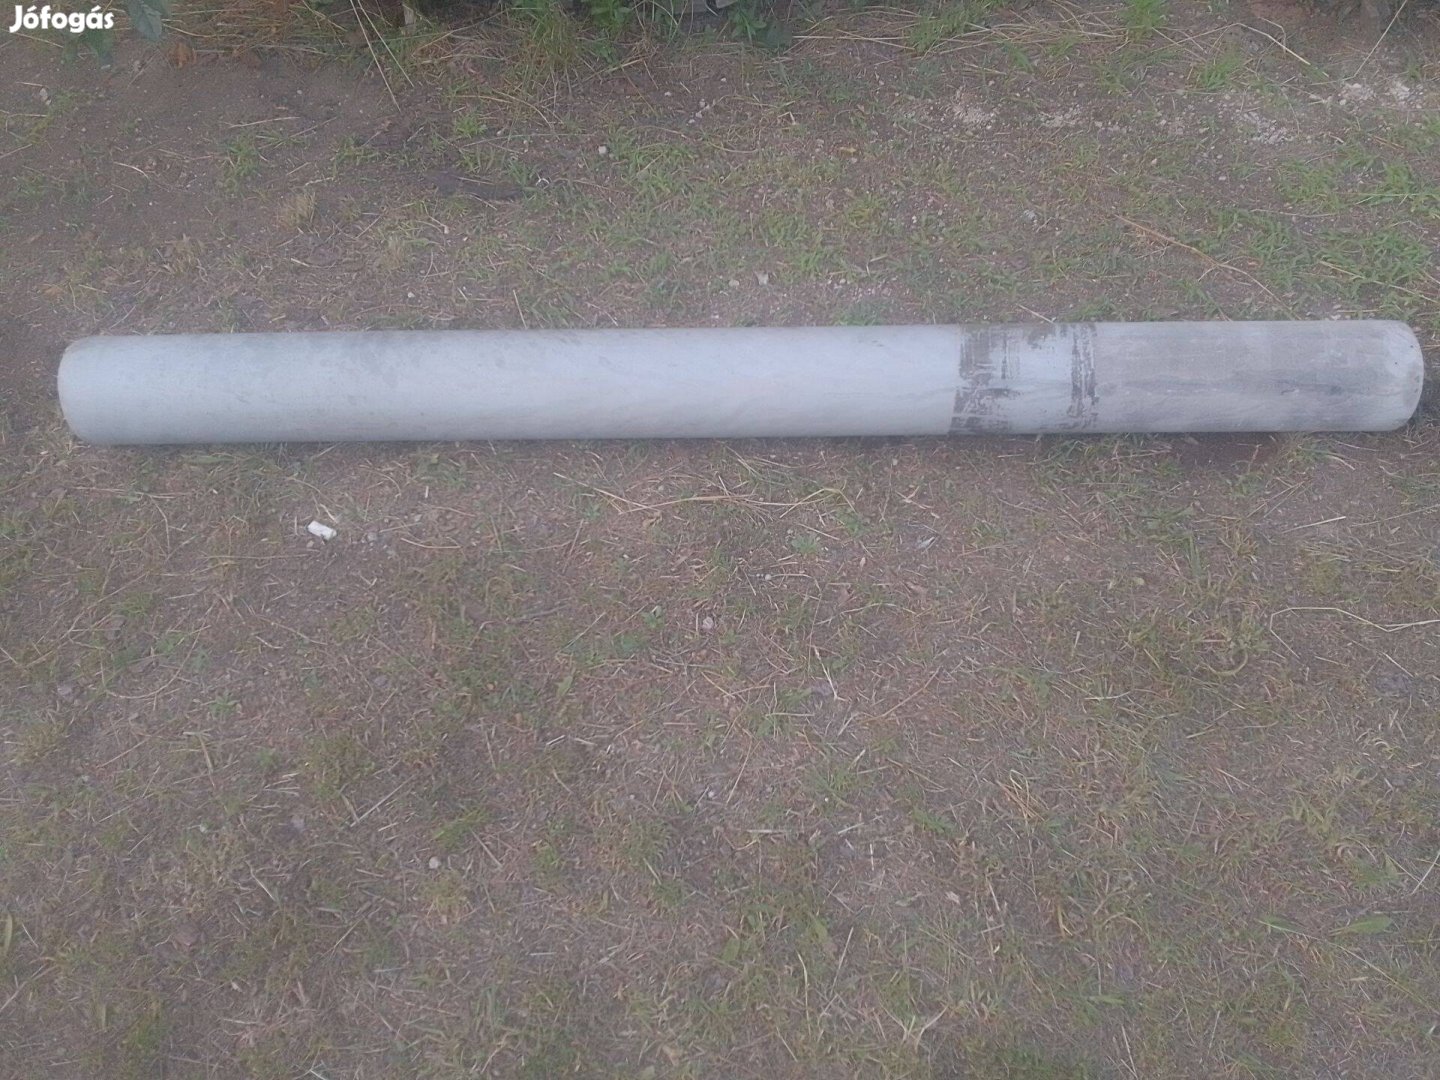 Műanyag cső 150-es átmérővel 191 cm hosszban eladó Győrben 2000 Ft